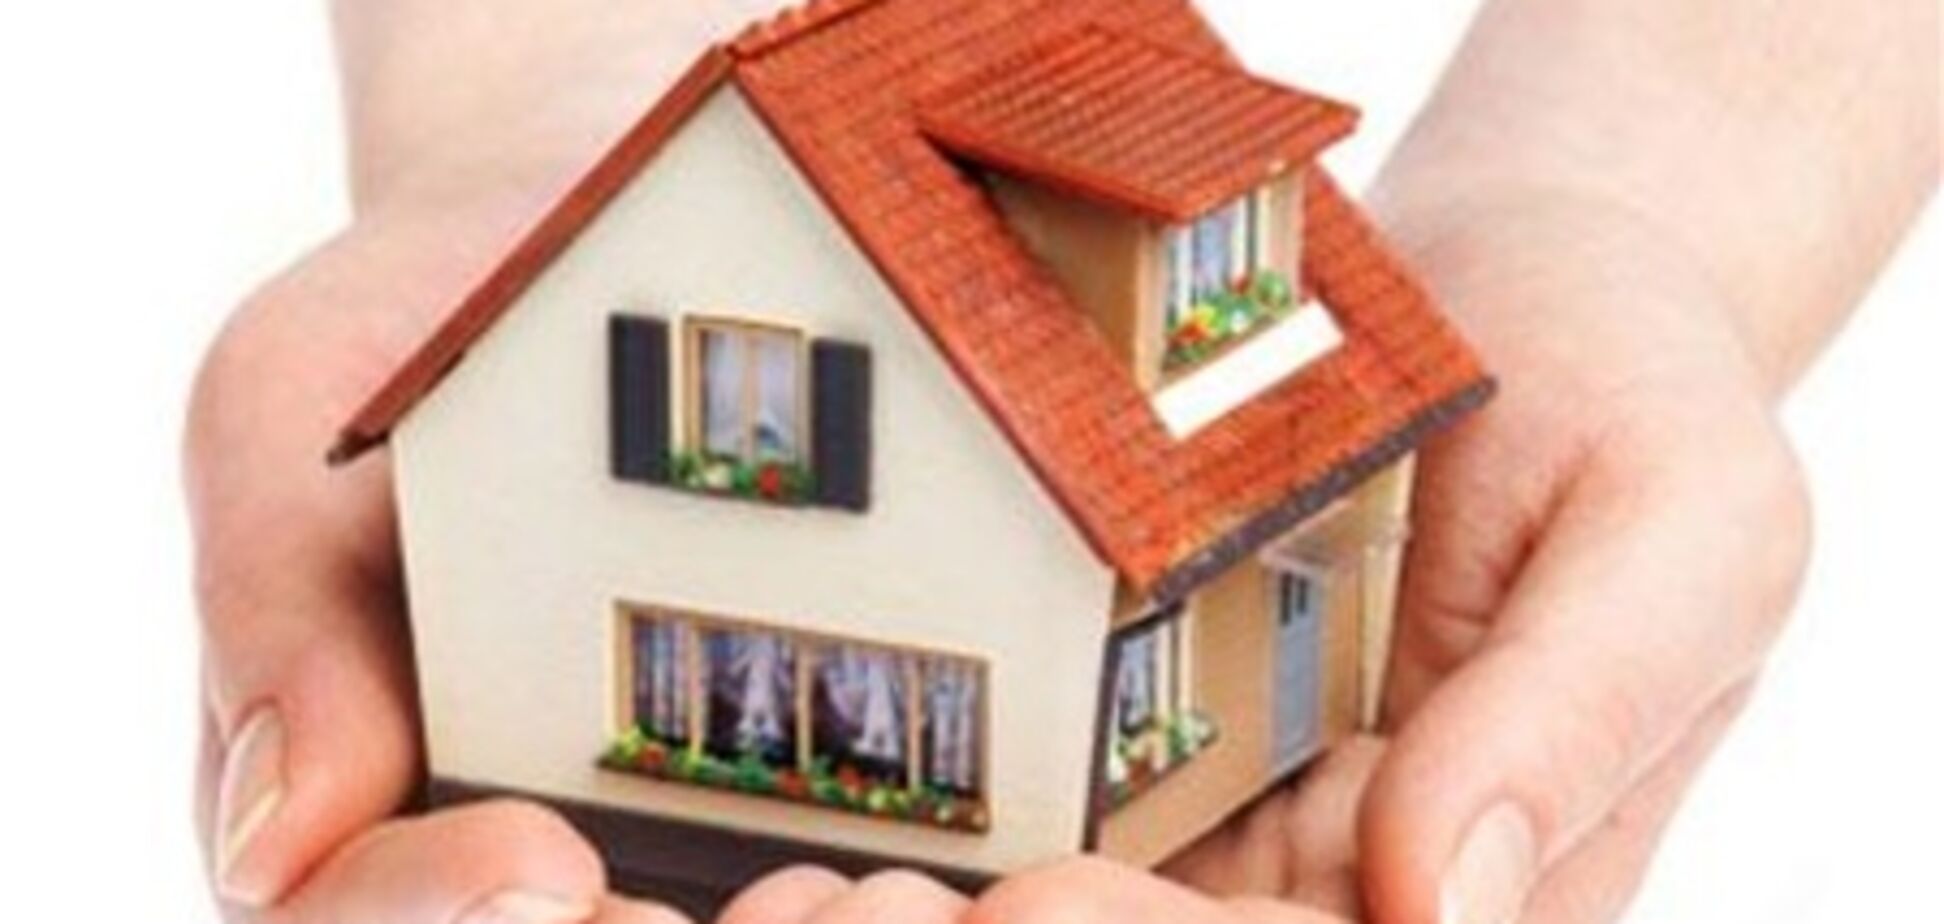 ГИУ: кредитный платеж и аренда квартиры должны быть соразмерными